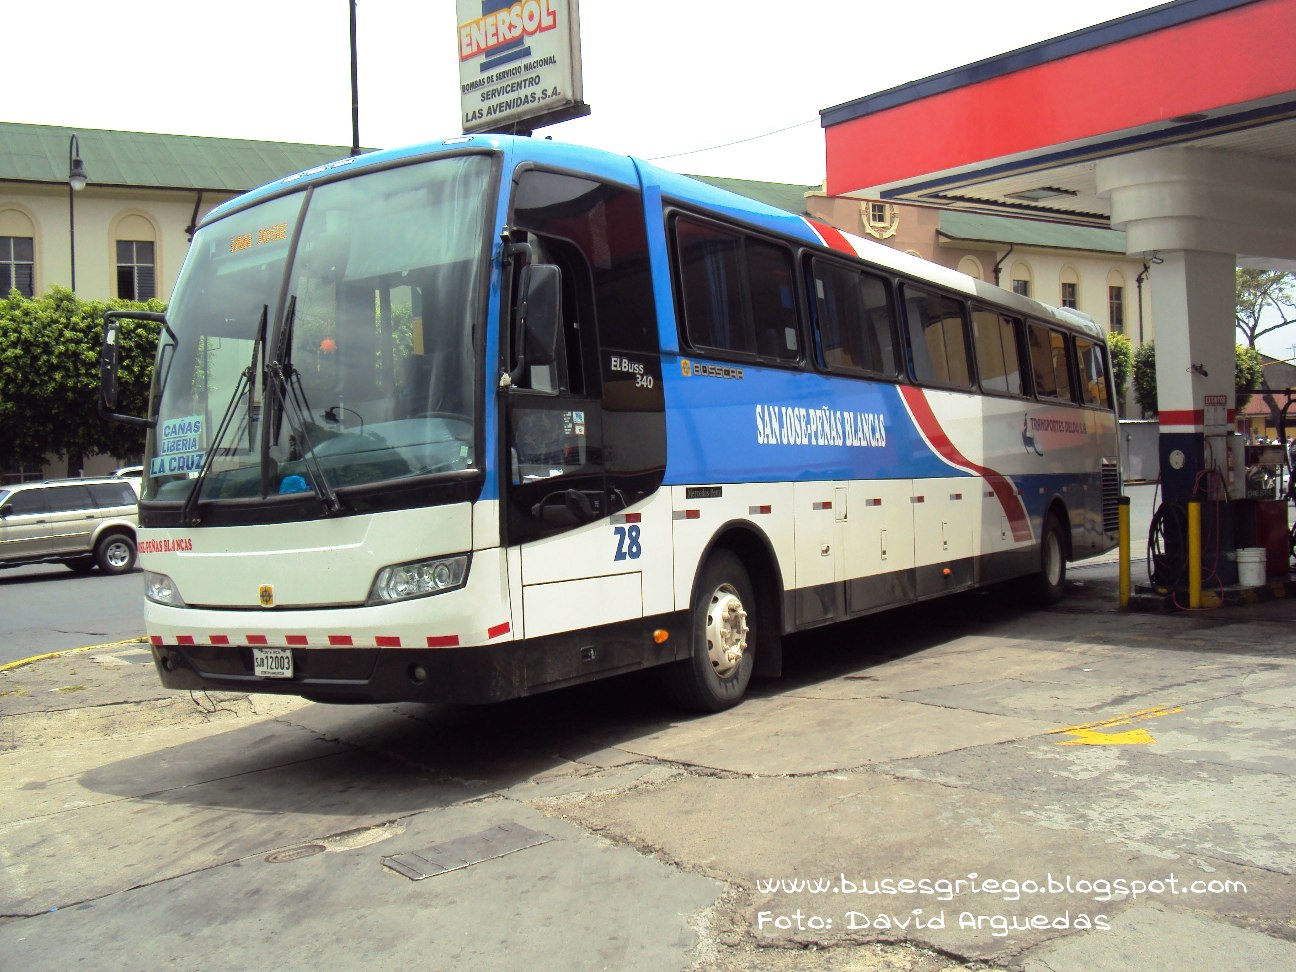 buses griego: ESPECIAL "BUSSCAR ELBUSS340"